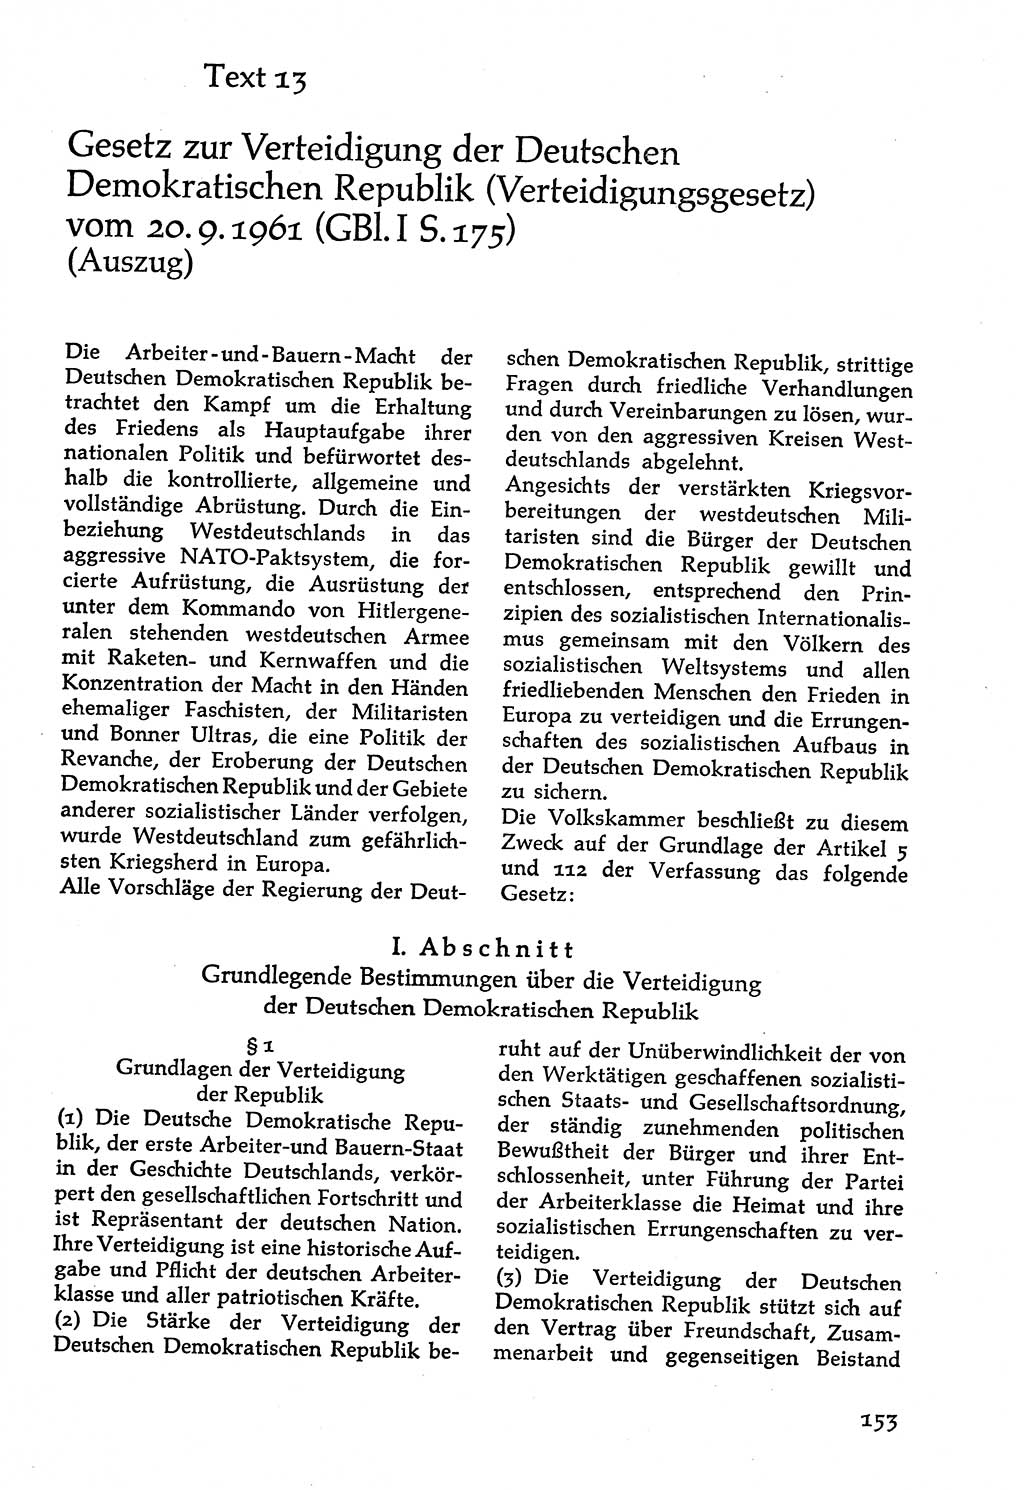 Volksdemokratische Ordnung in Mitteldeutschland [Deutsche Demokratische Republik (DDR)], Texte zur verfassungsrechtlichen Situation 1963, Seite 153 (Volksdem. Ordn. Md. DDR 1963, S. 153)